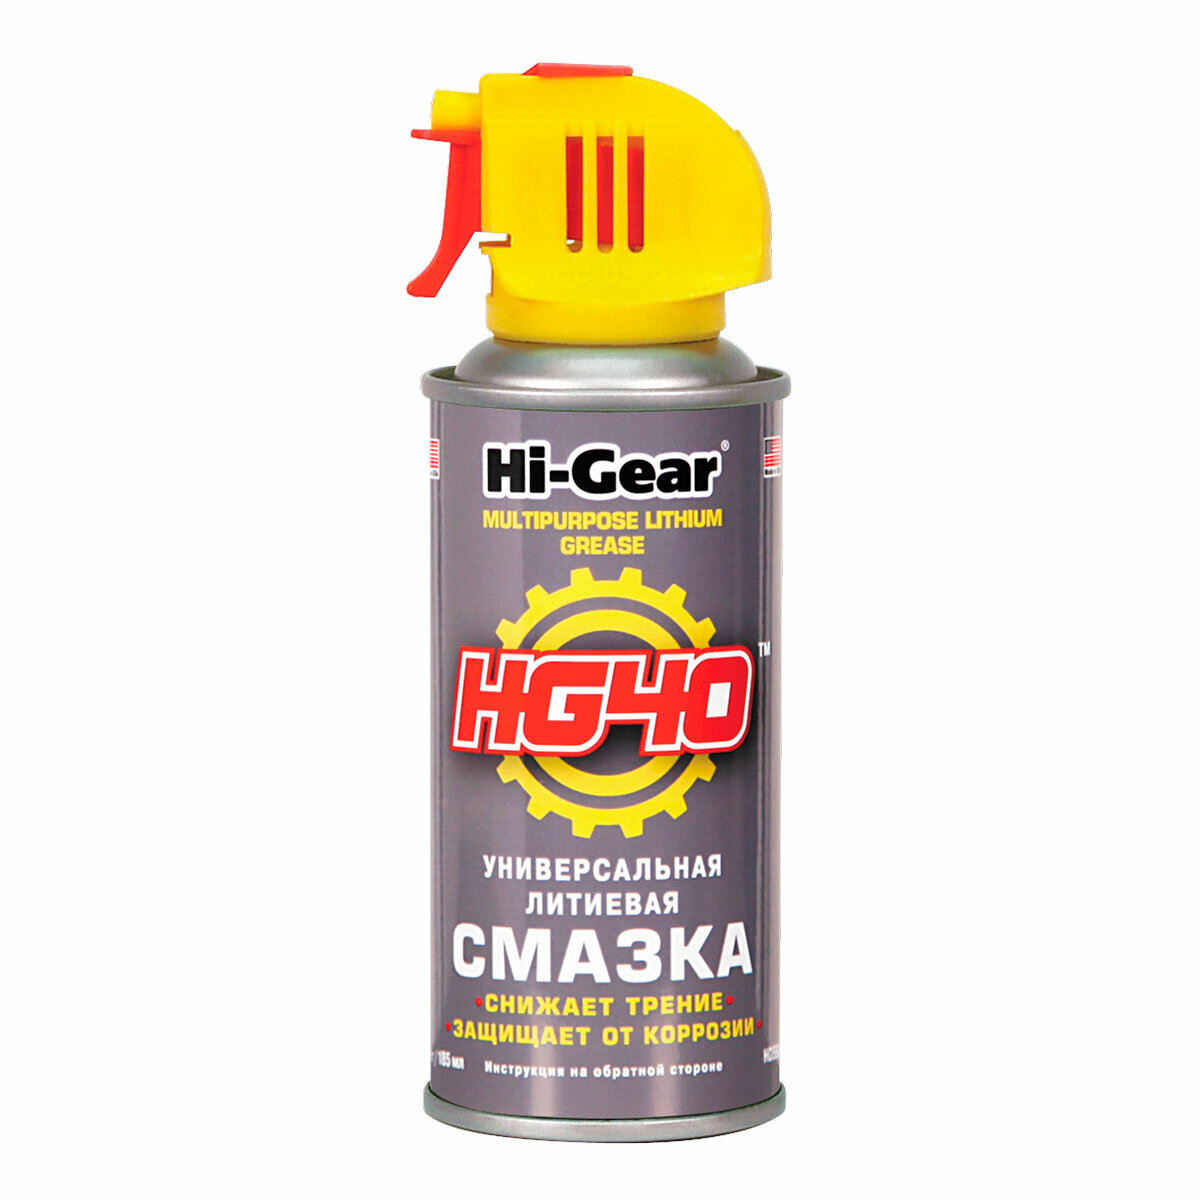 Универсальная литиевая смазка, аэрозоль Hi Gear, 142 г. HG5504